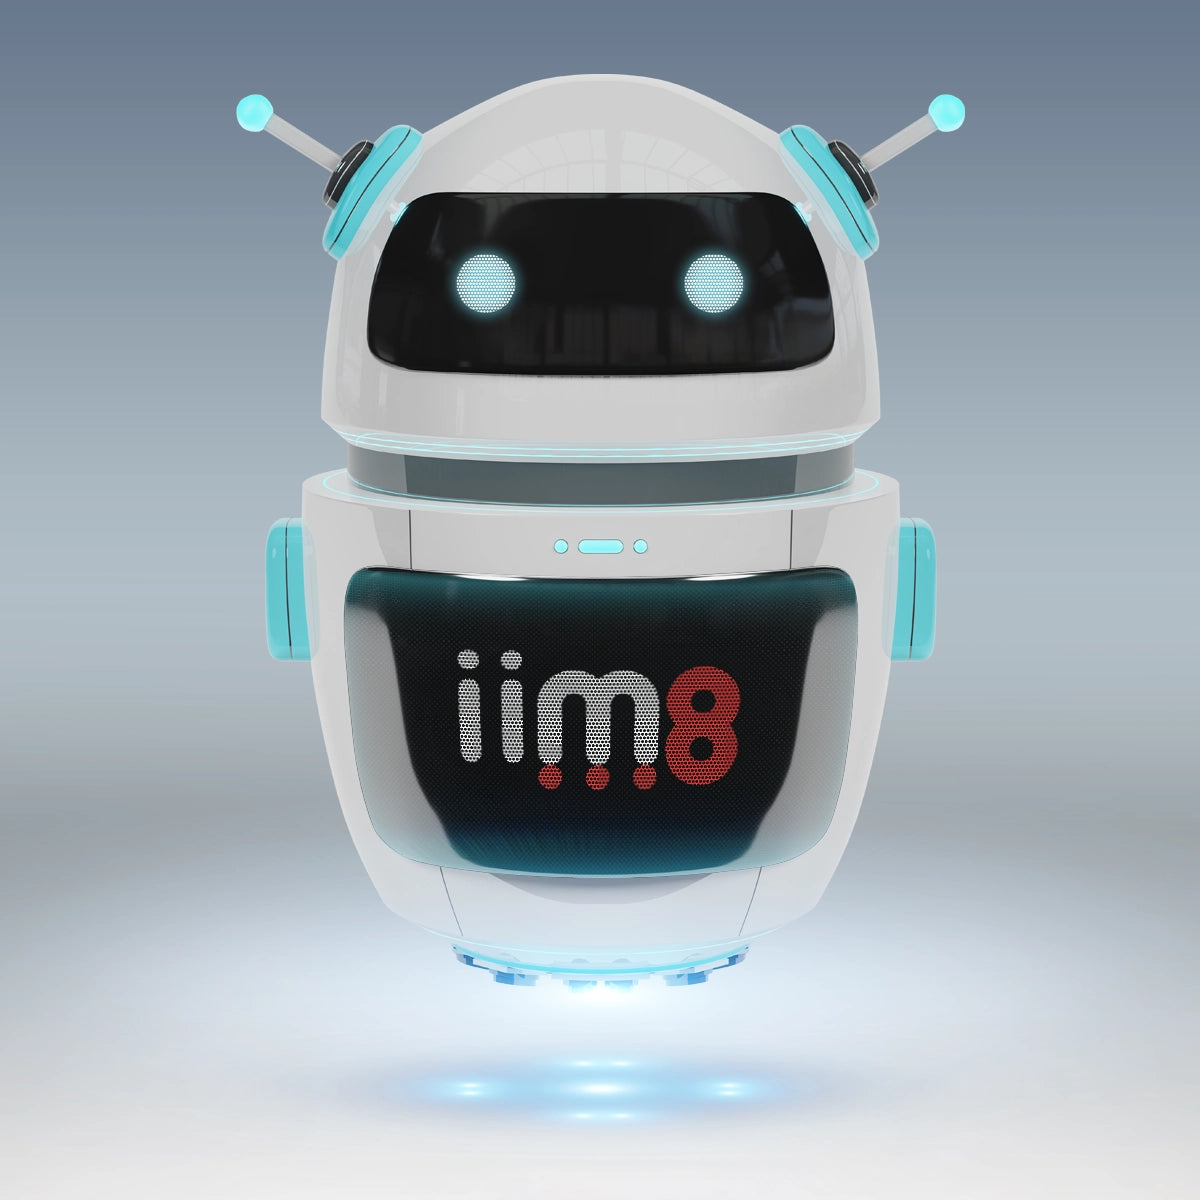 iim8.com